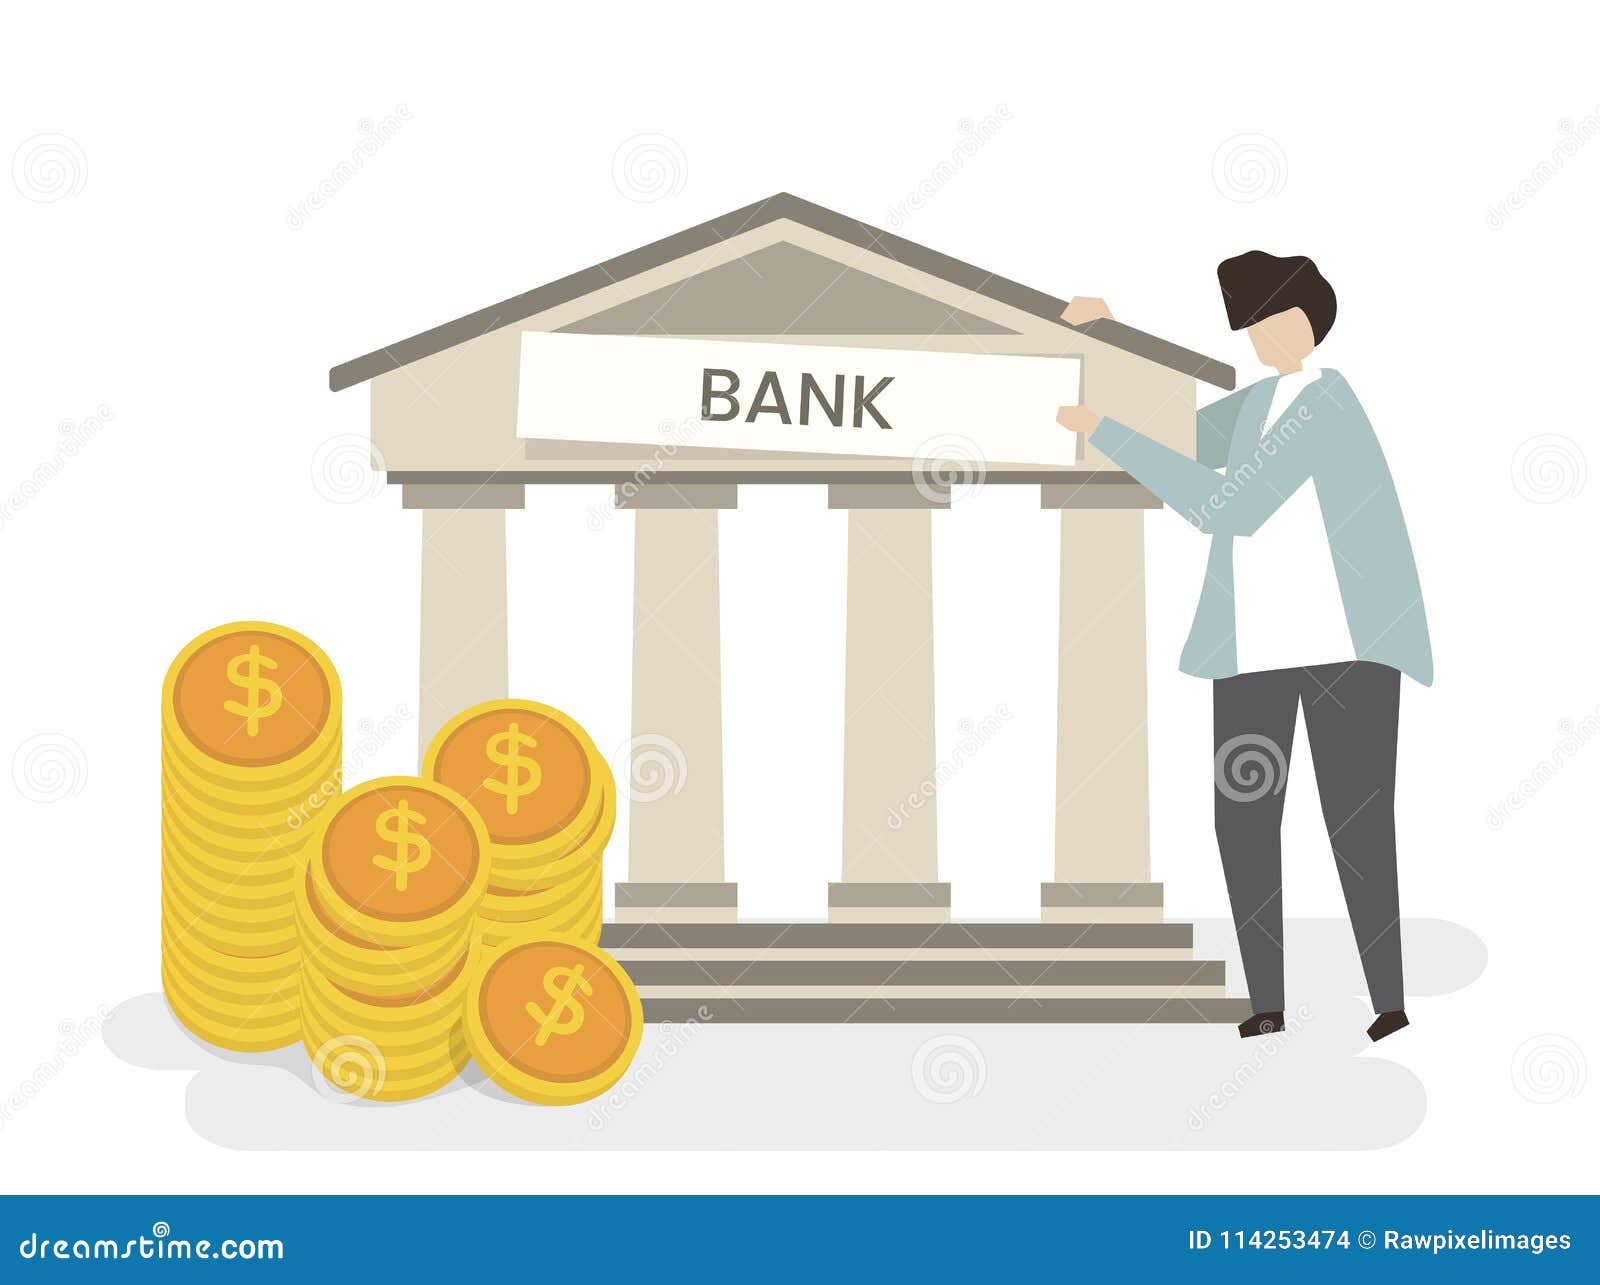 Bank pp. Банковские иллюстрации. Банк рисунок. Векторные иллюстрации банк. Рисунок на тему банк.